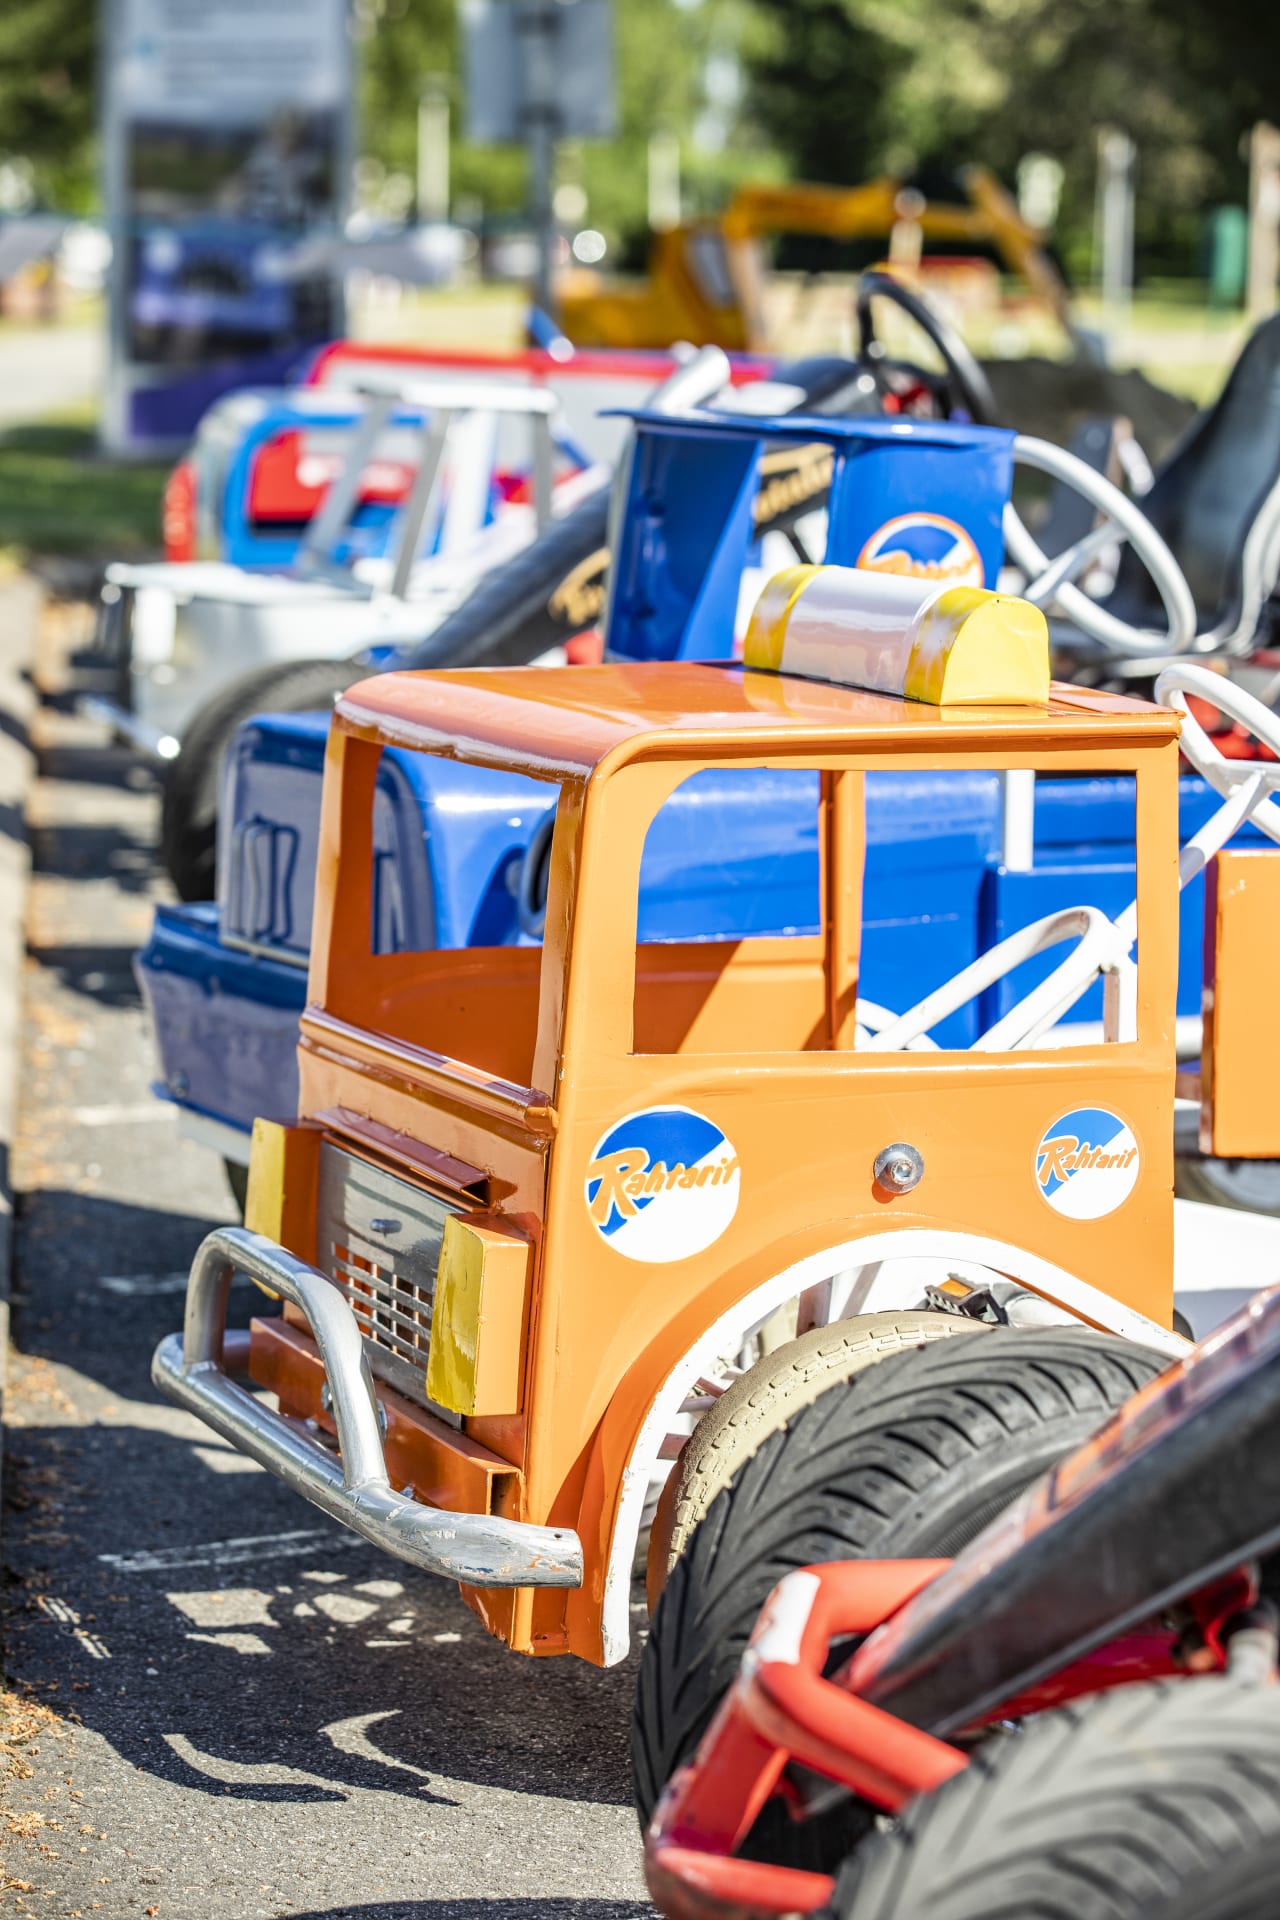 Liikennepuiston polkuautoja parkkirivistössä. Autot ovat erimallisia ja erivärisiä, kuvan etualalla oranssi ja sininen polkuauton keula.